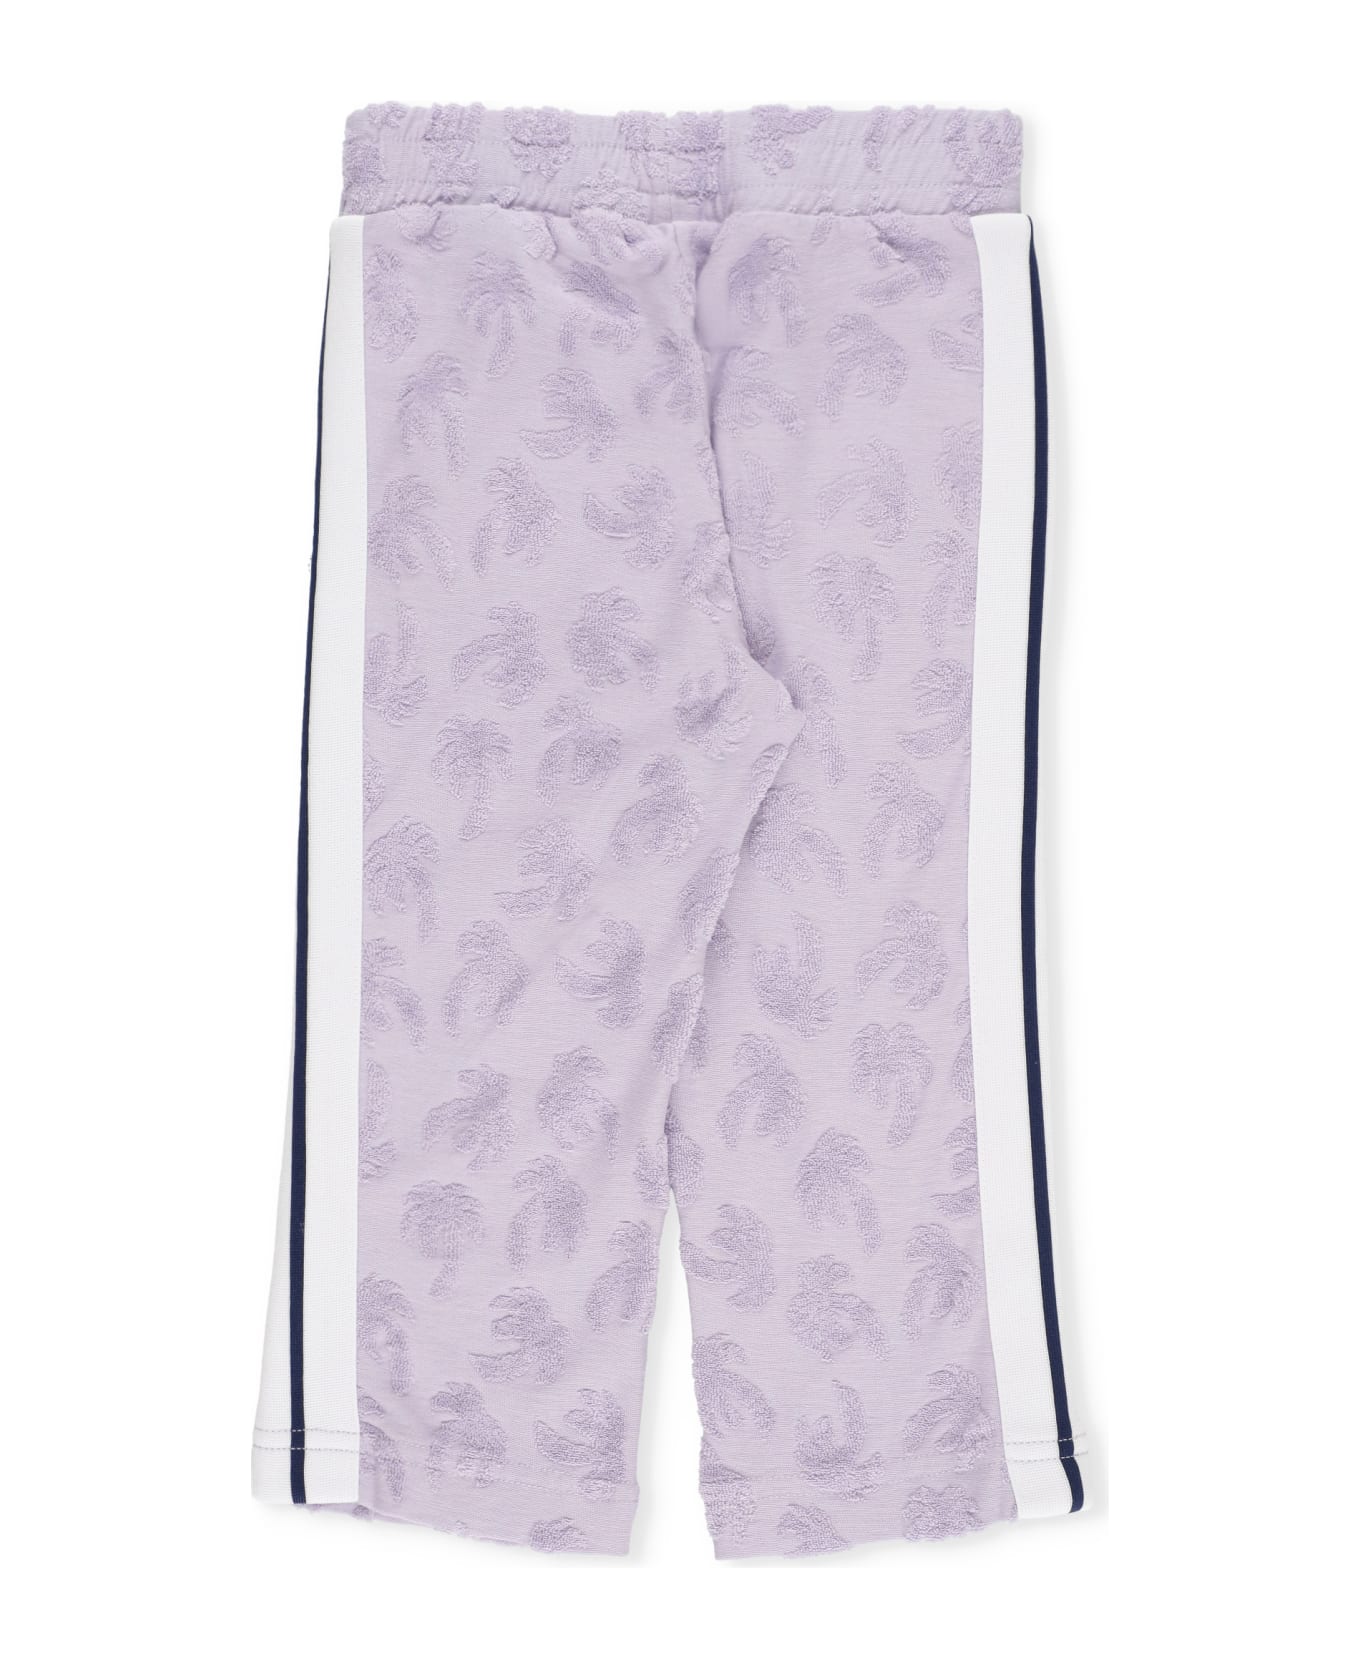 Palm Angels Cotton Pants - Purple